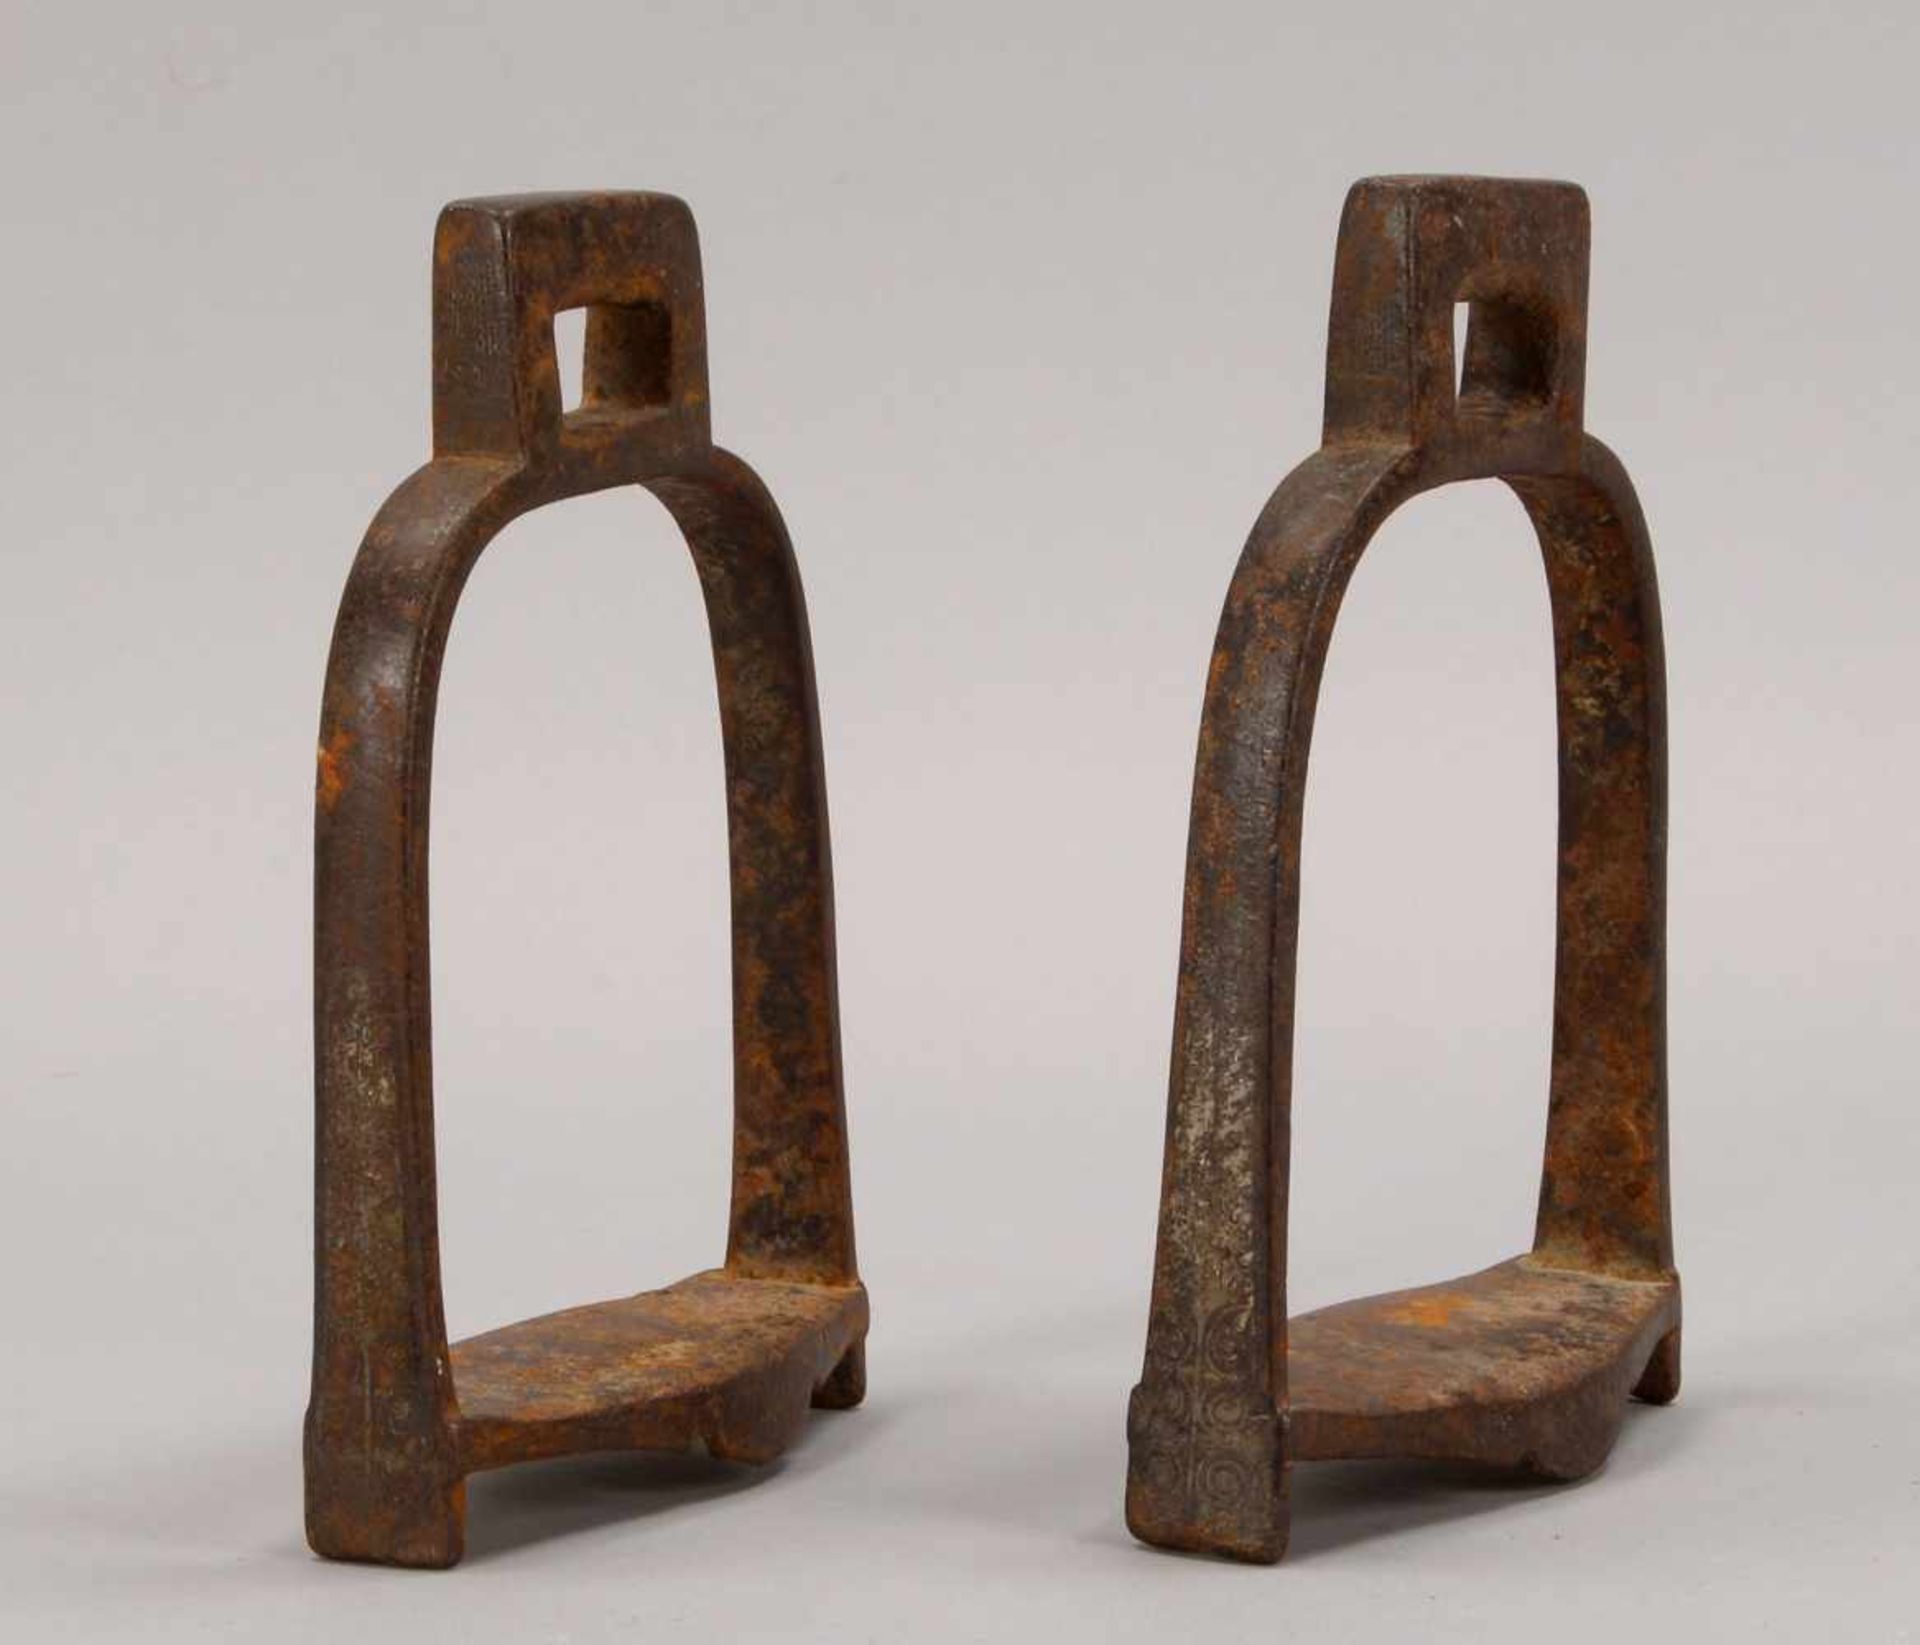 Paar Steigbügel (China), Eisen, seitlich mit ornamentalem Restdekor/versilbert; Höhe 20,5 cm